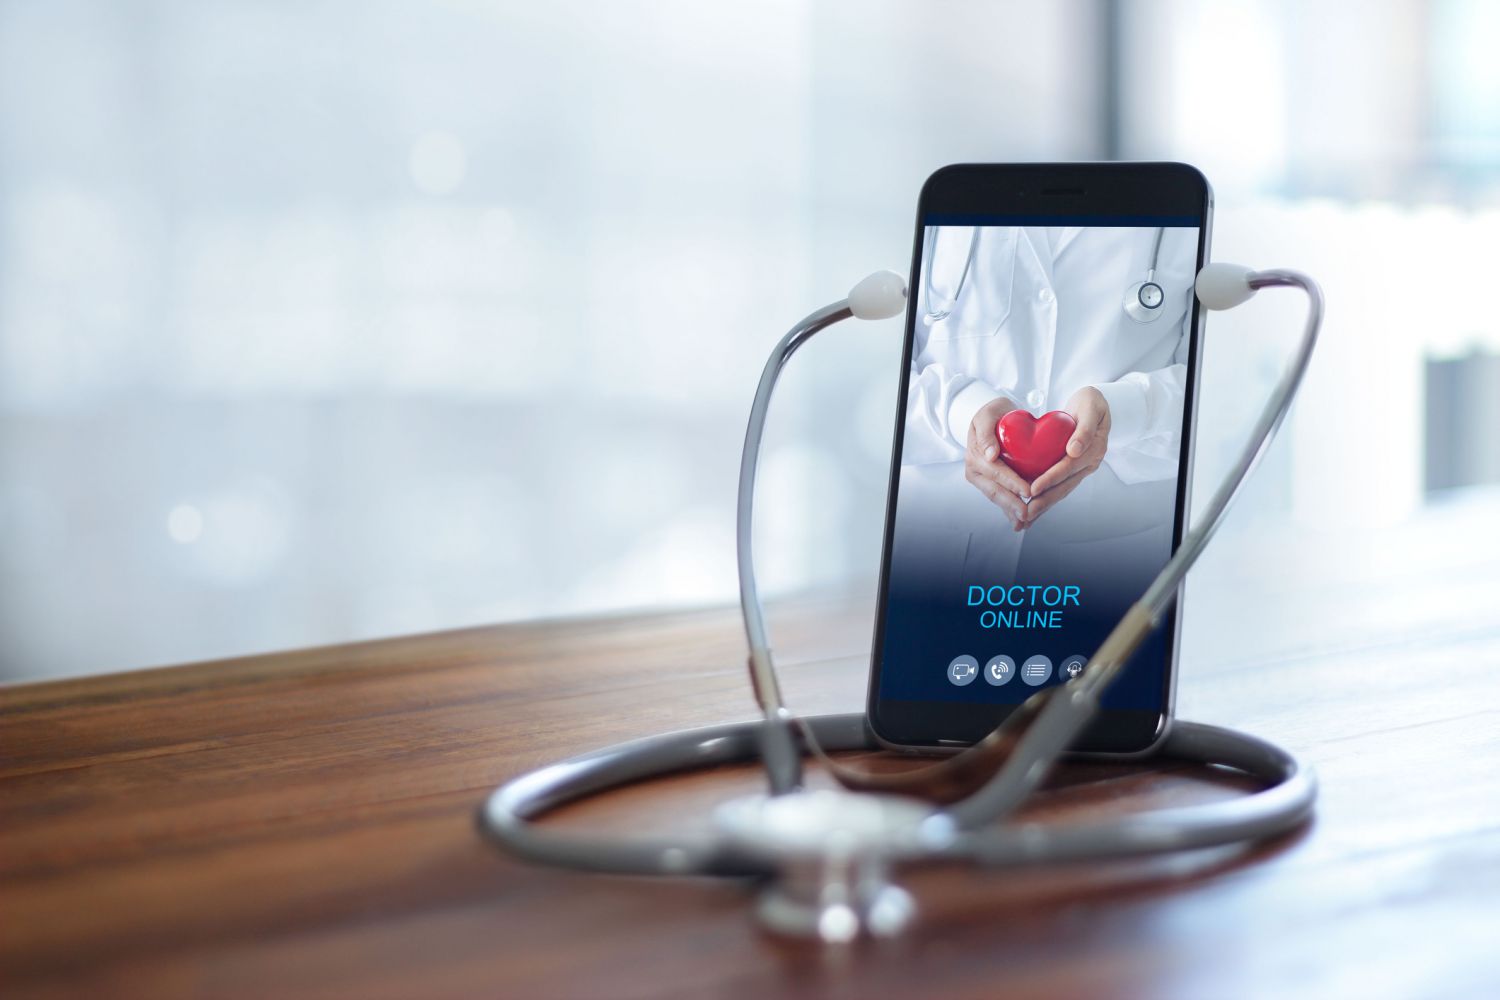 Videosprechstunde mit Mediziner:innen über das Smartphone